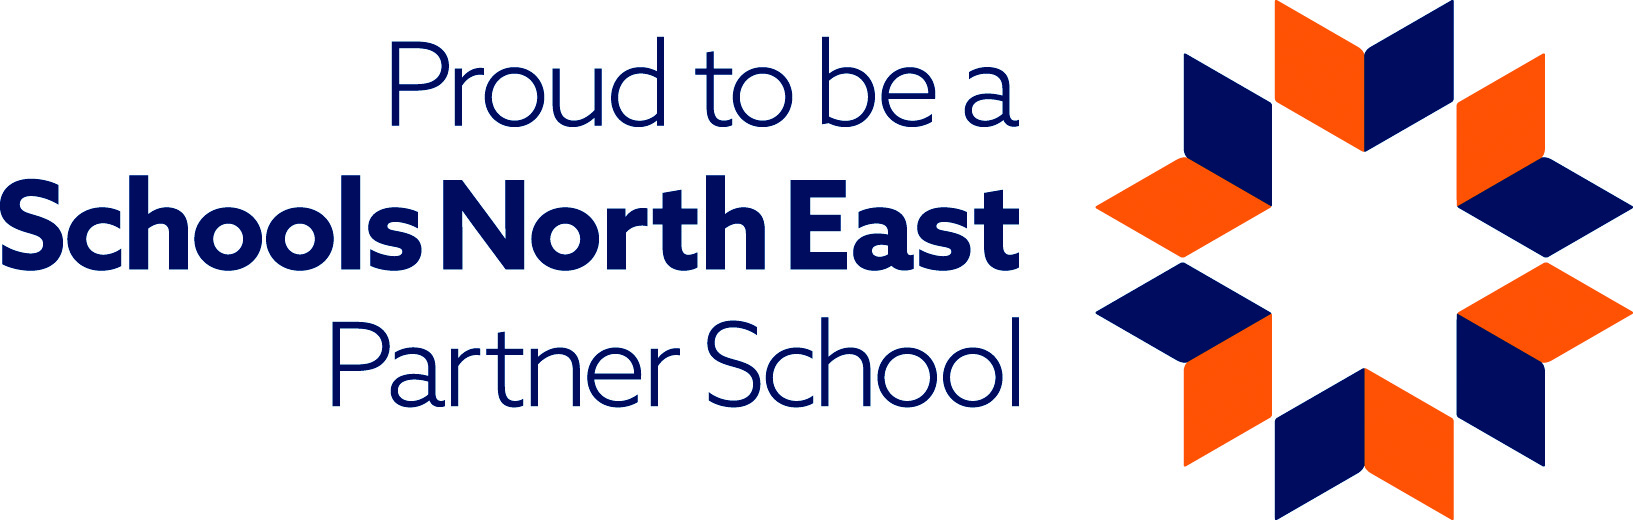 Schools North East Partner School